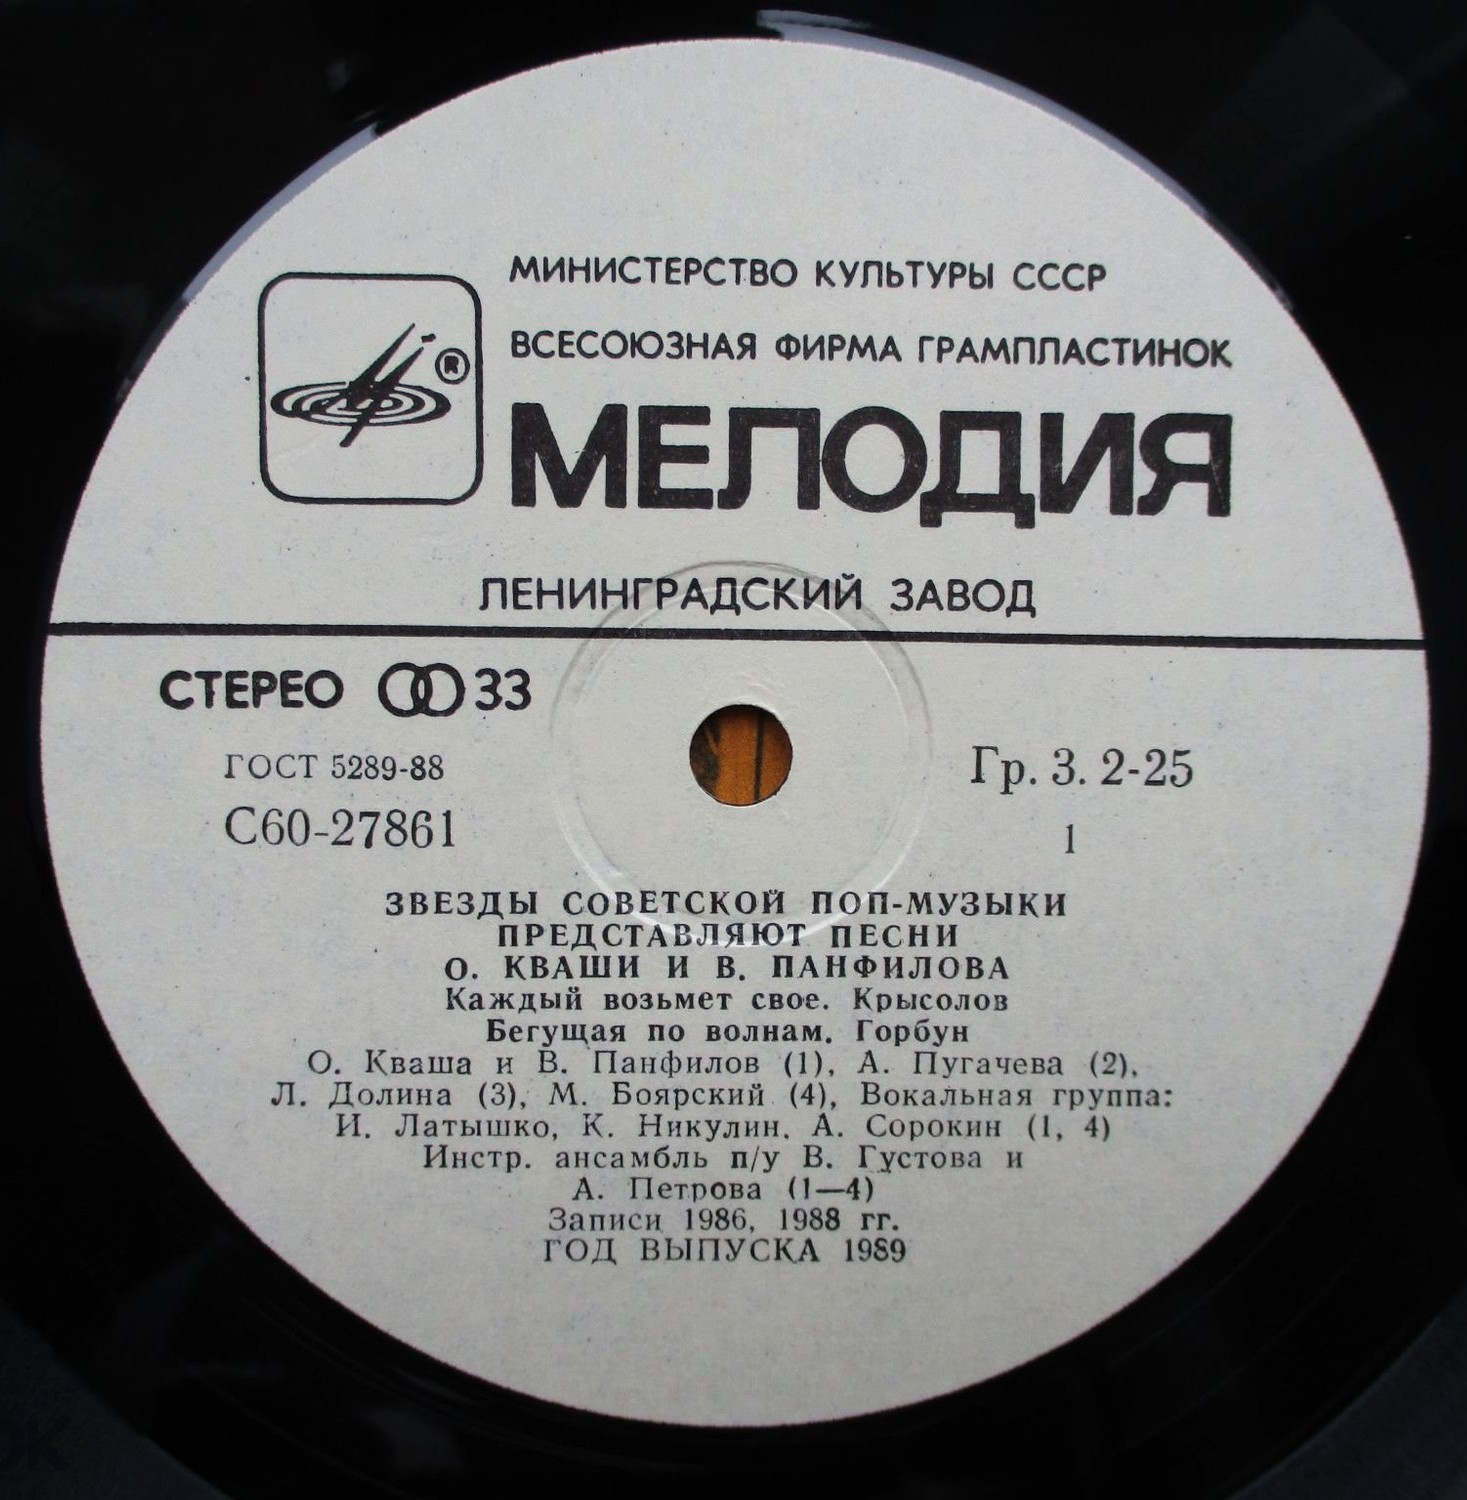 Каждый возьмёт своё. Звезды советской поп-музыки представляют песни Олега Кваши и Валерия Панфилова